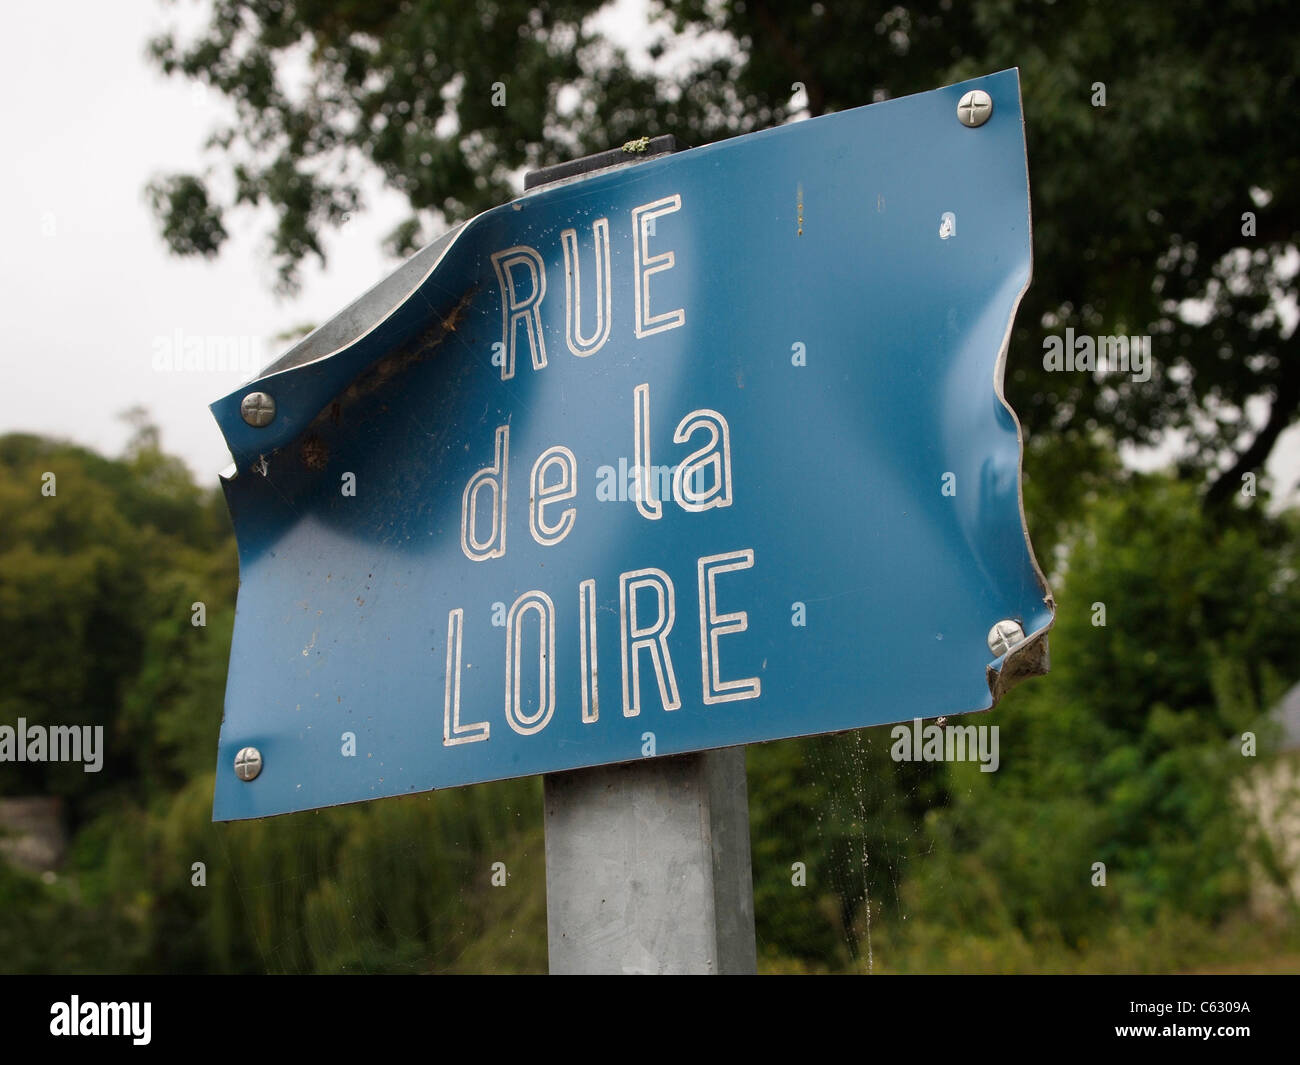 Rue maltratadas de la Loire cartel con el nombre de la calle en Ussé, Valle del Loira, Francia Foto de stock